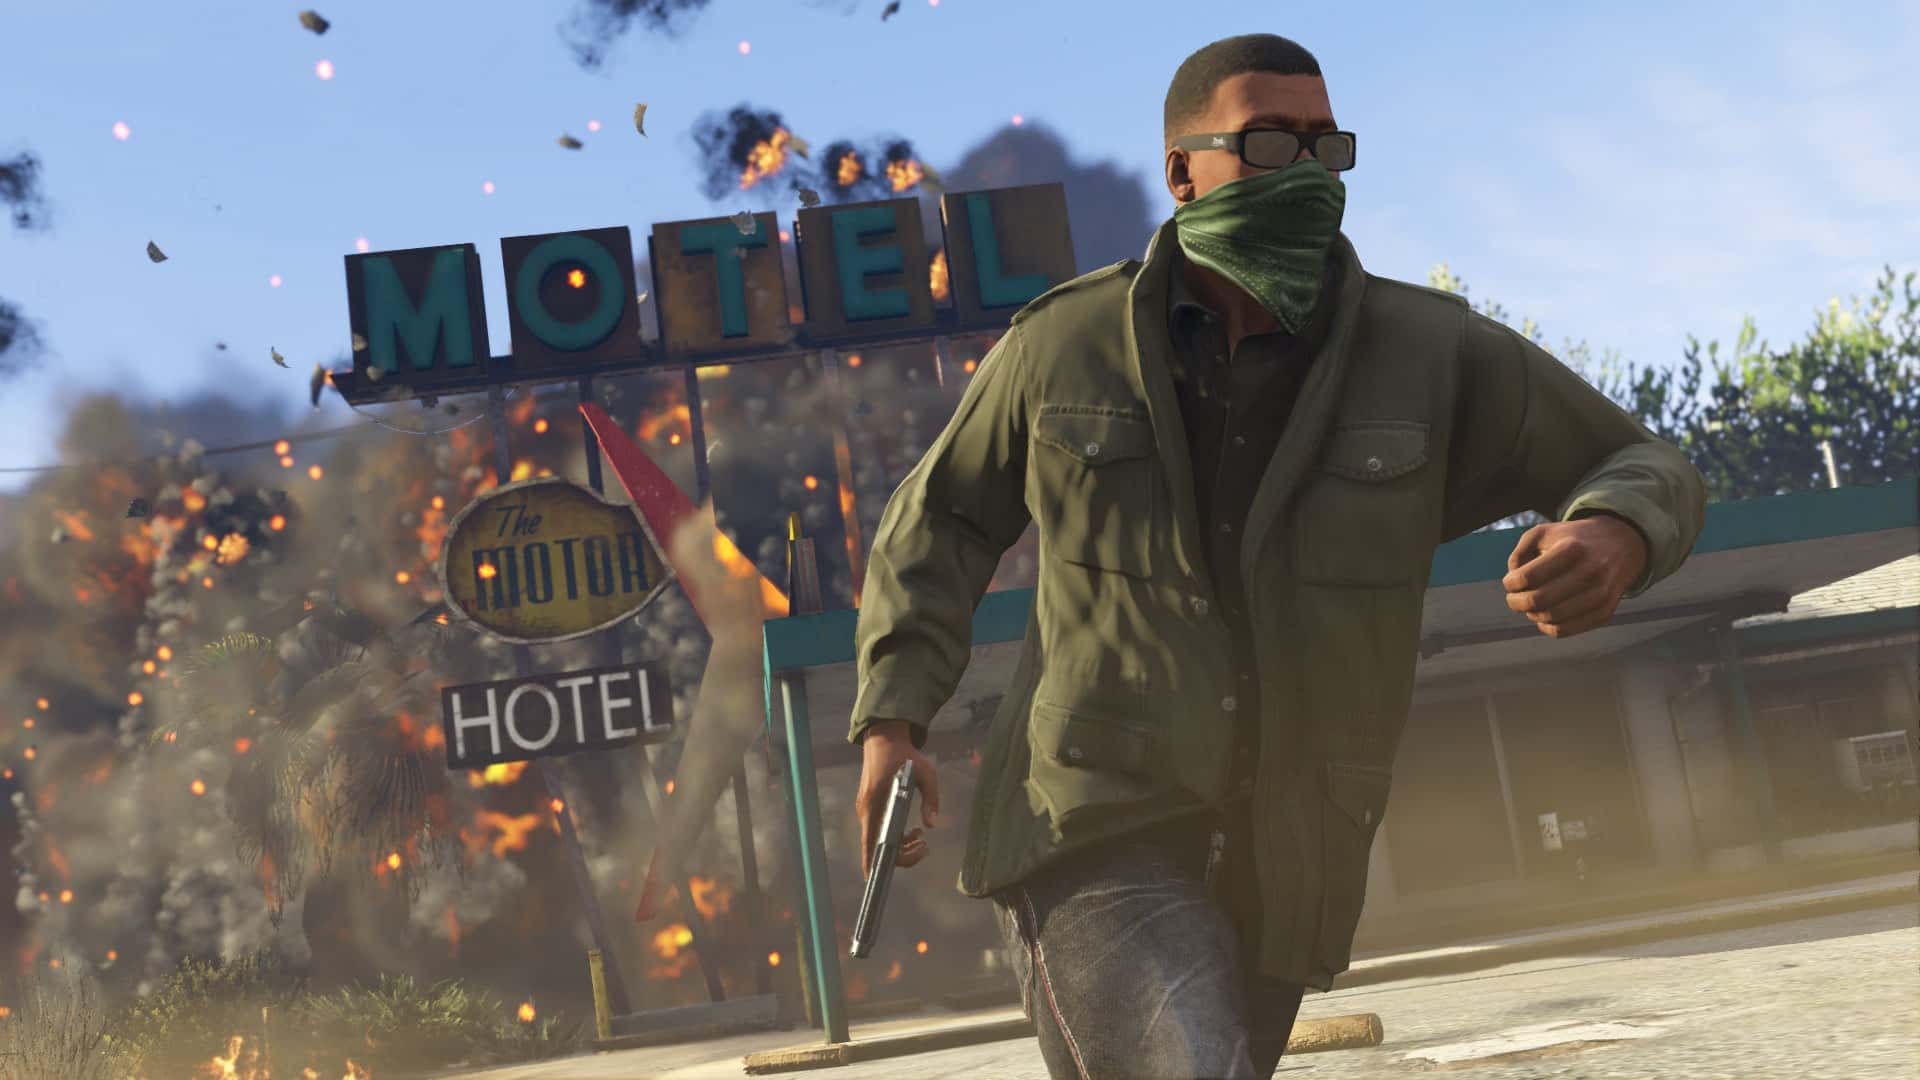  اکانت قانونی Grand Theft Auto V برای PS4 & PS5 